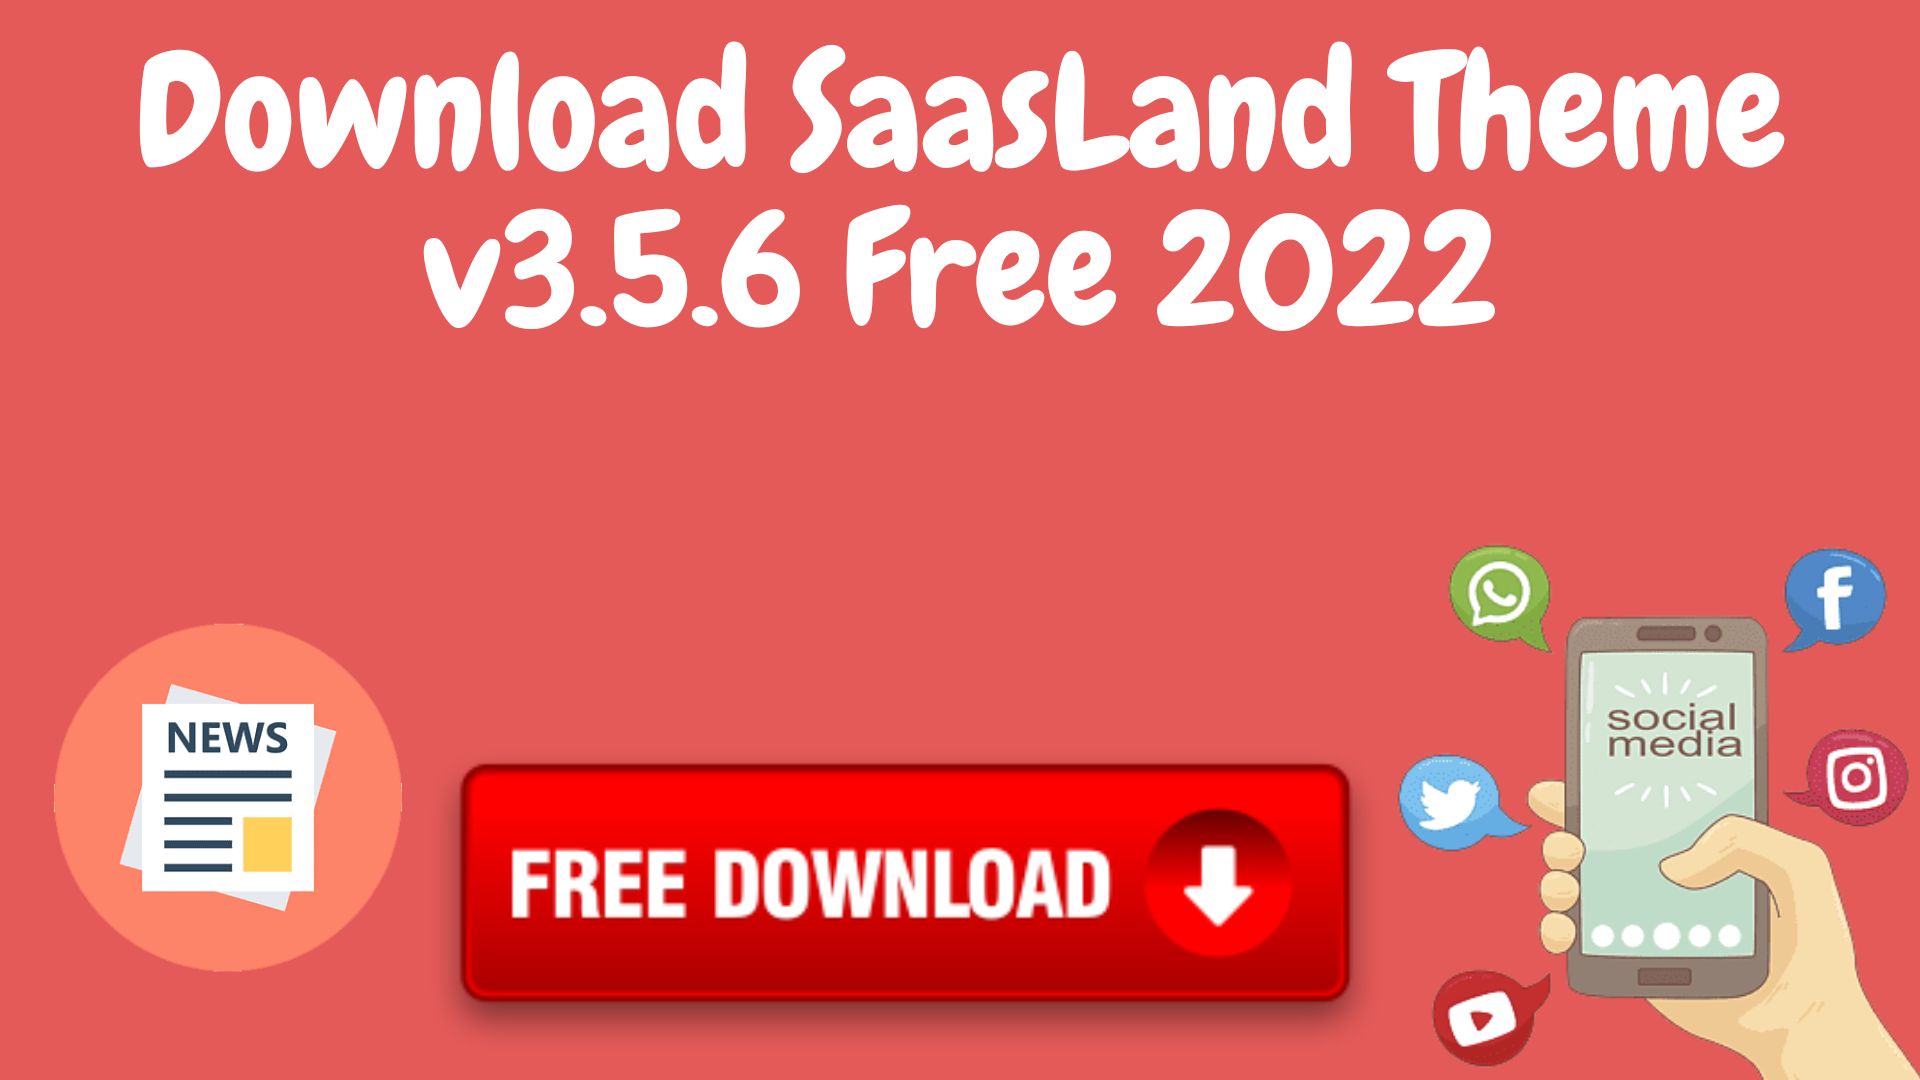 Download saasland theme v3. 5. 6 free 2022